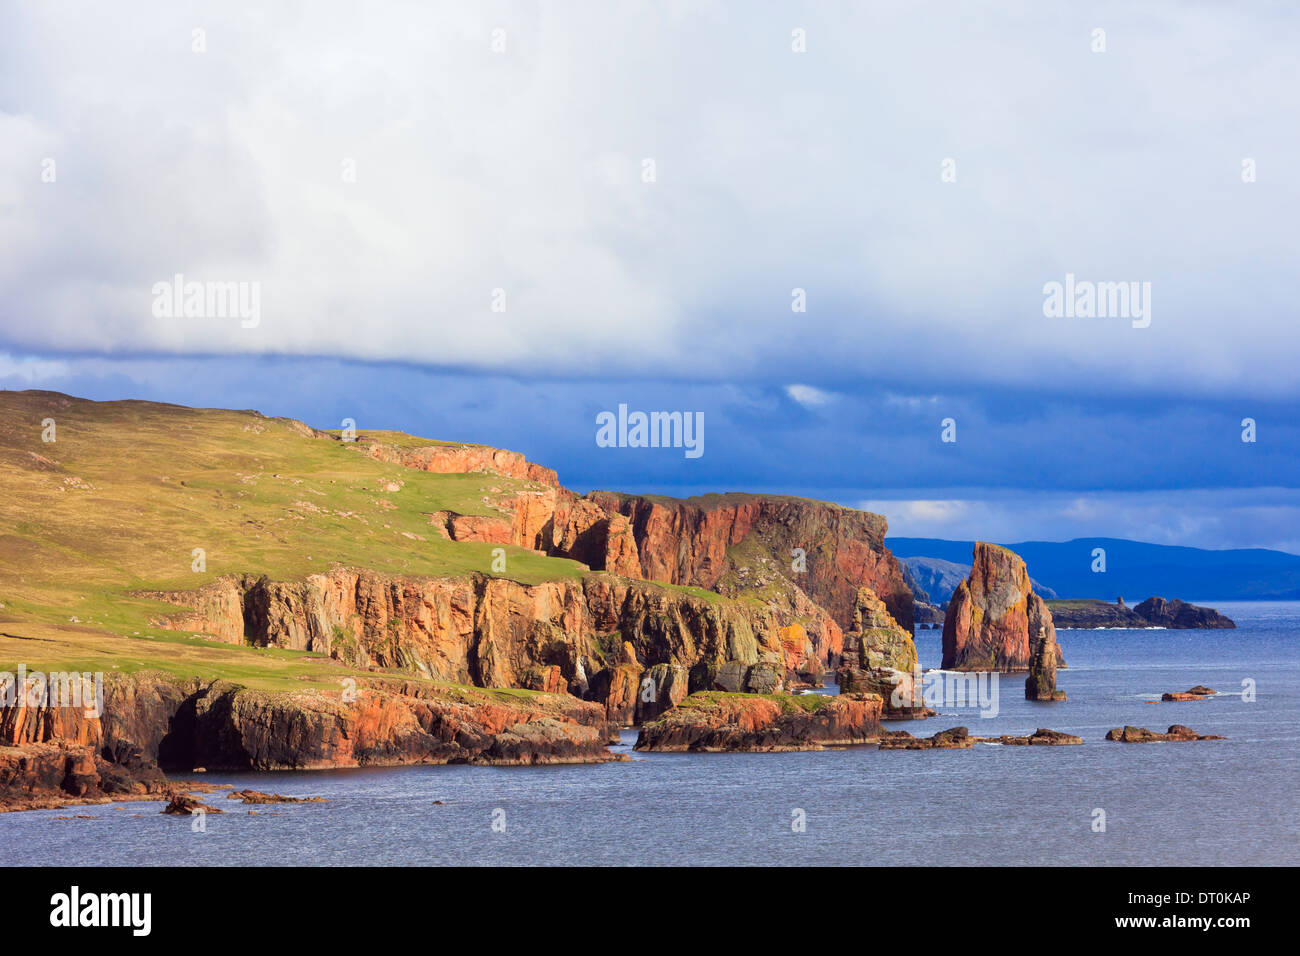 Il Drongs di arenaria rossa e pile di mare in Braewick sulla costa frastagliata. Eshaness, Isole Shetland Scozia, Regno Unito, Gran Bretagna Foto Stock